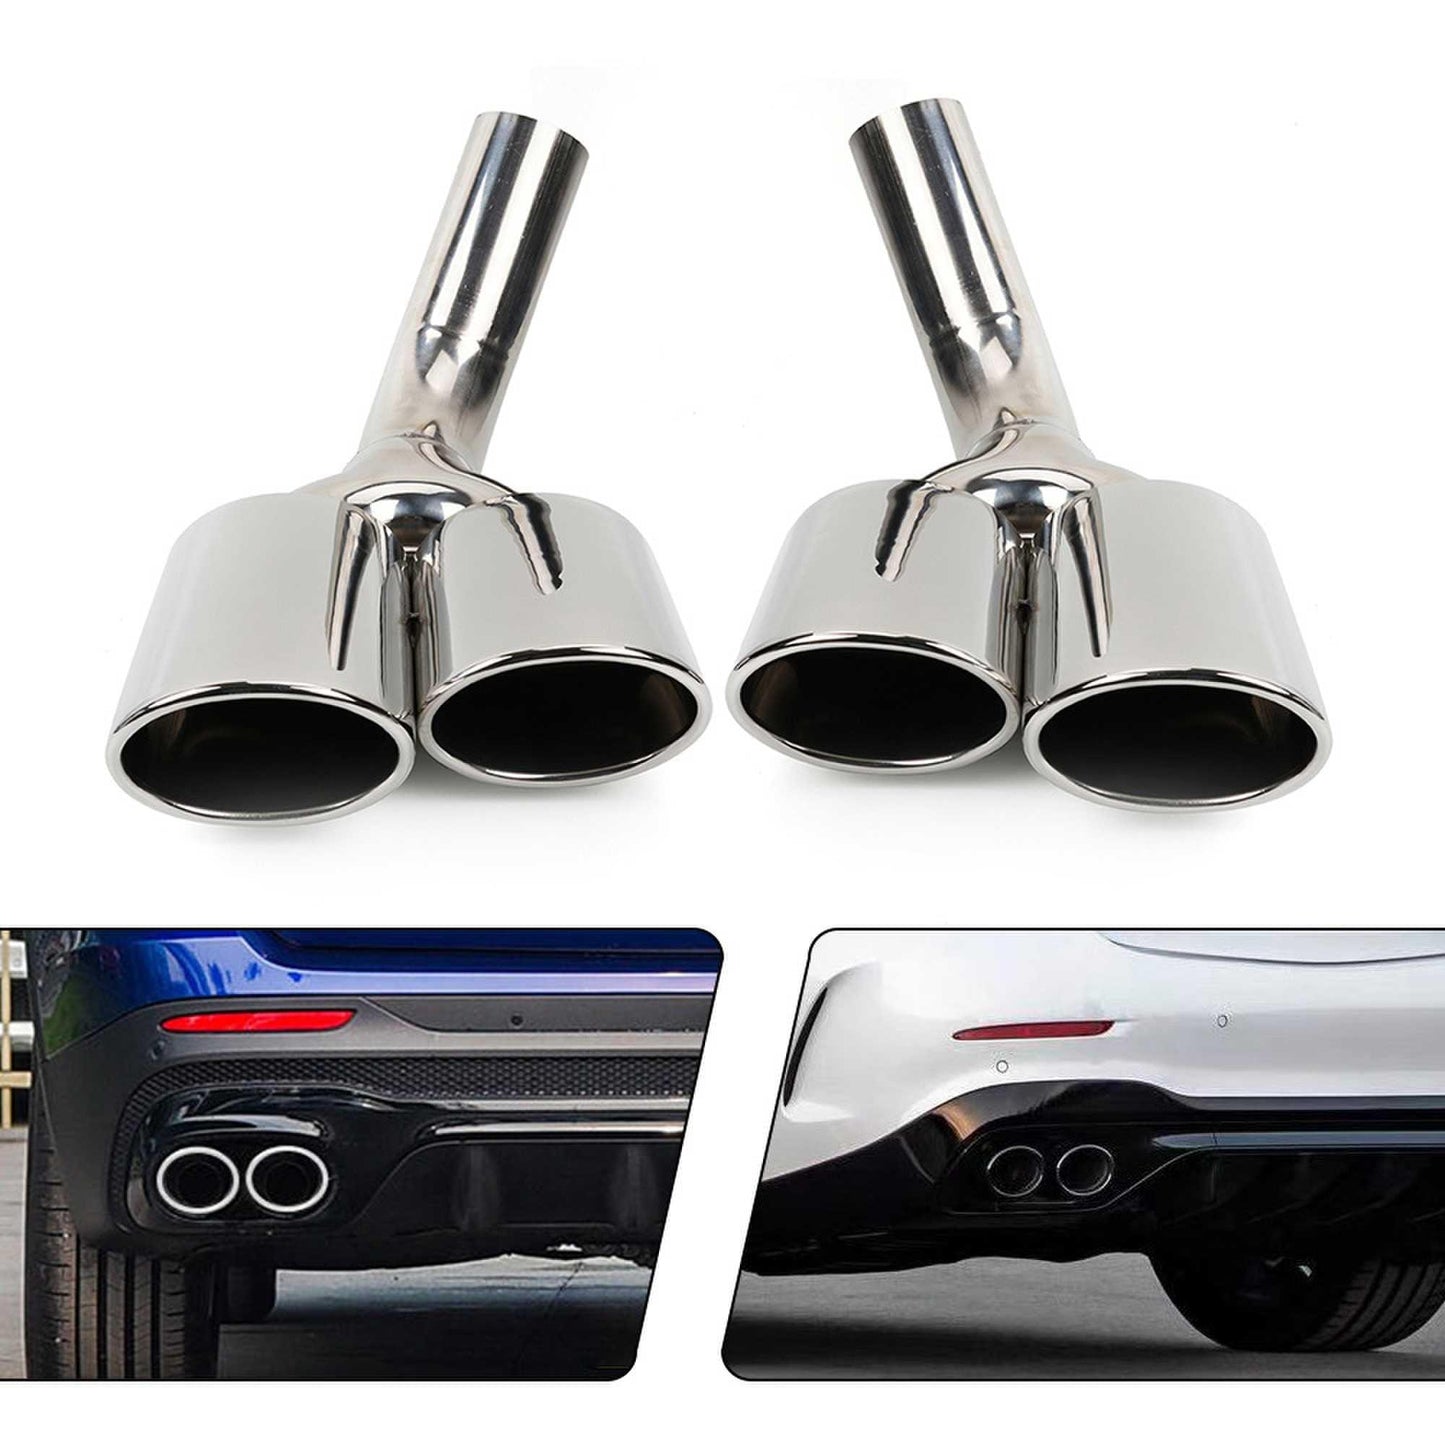 RASTP 1 Pair Exhaust Tips Muffler Exhaust Tail Pipe for Mercedes Benz G Class W463 G500/G63/G550 - RASTP